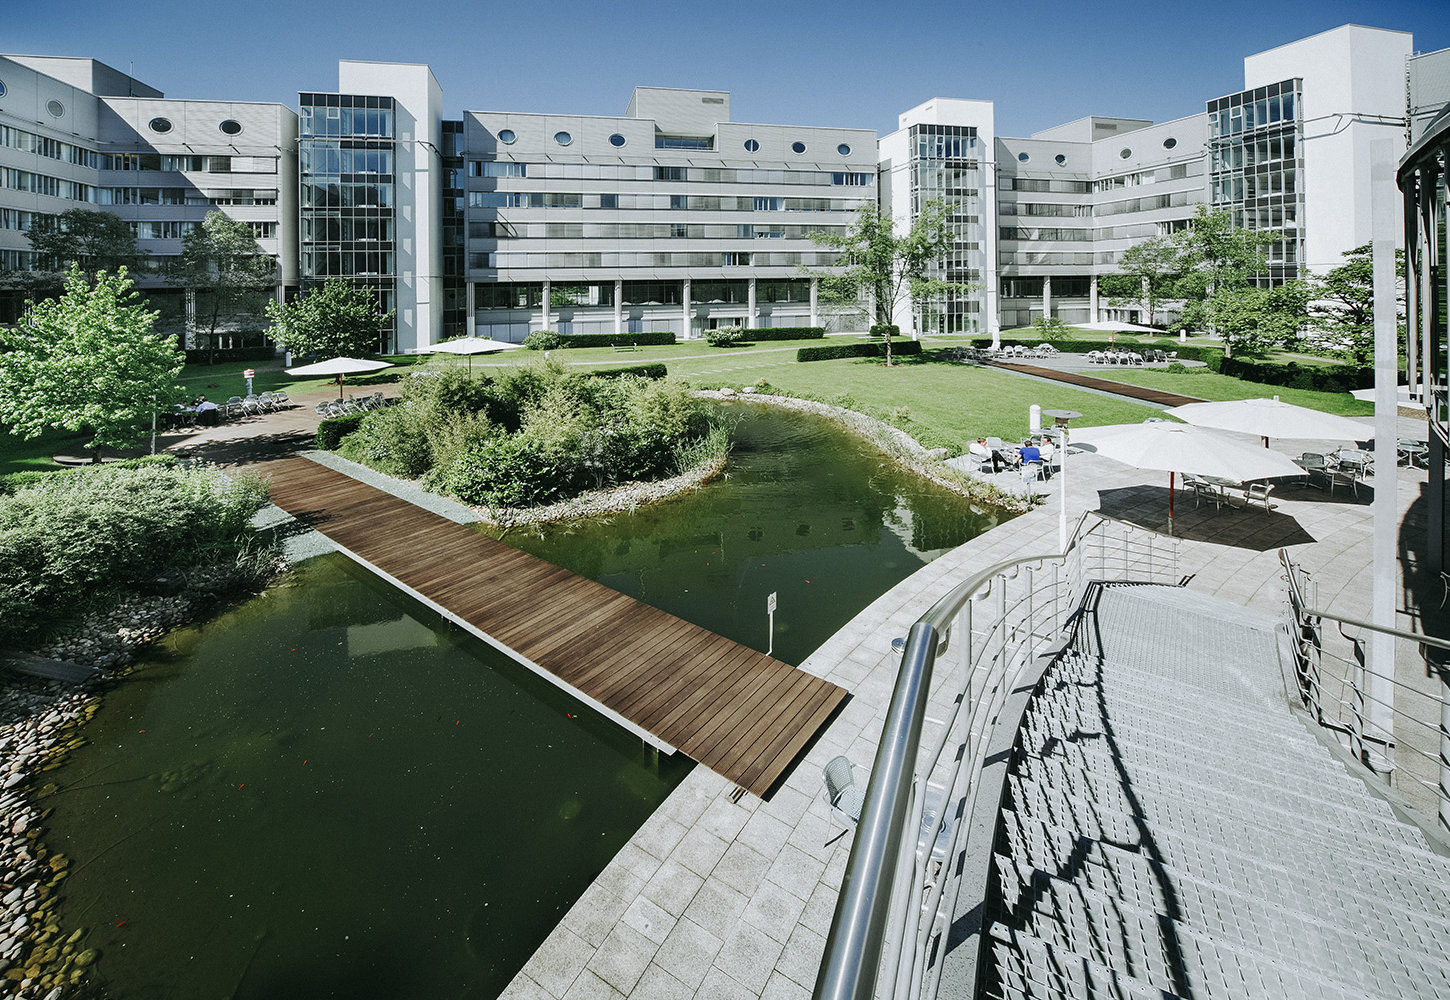 Firmengarten aus Vogelperspektive mit Treppe, einem großen Teich über den eine Holzbrücke führt sowie eine Terrasse mit Sonnenschirmen und eine grüne Rasenfläche. Der Garten befindet sich in der Mitte eines großen Bürokomplexes.